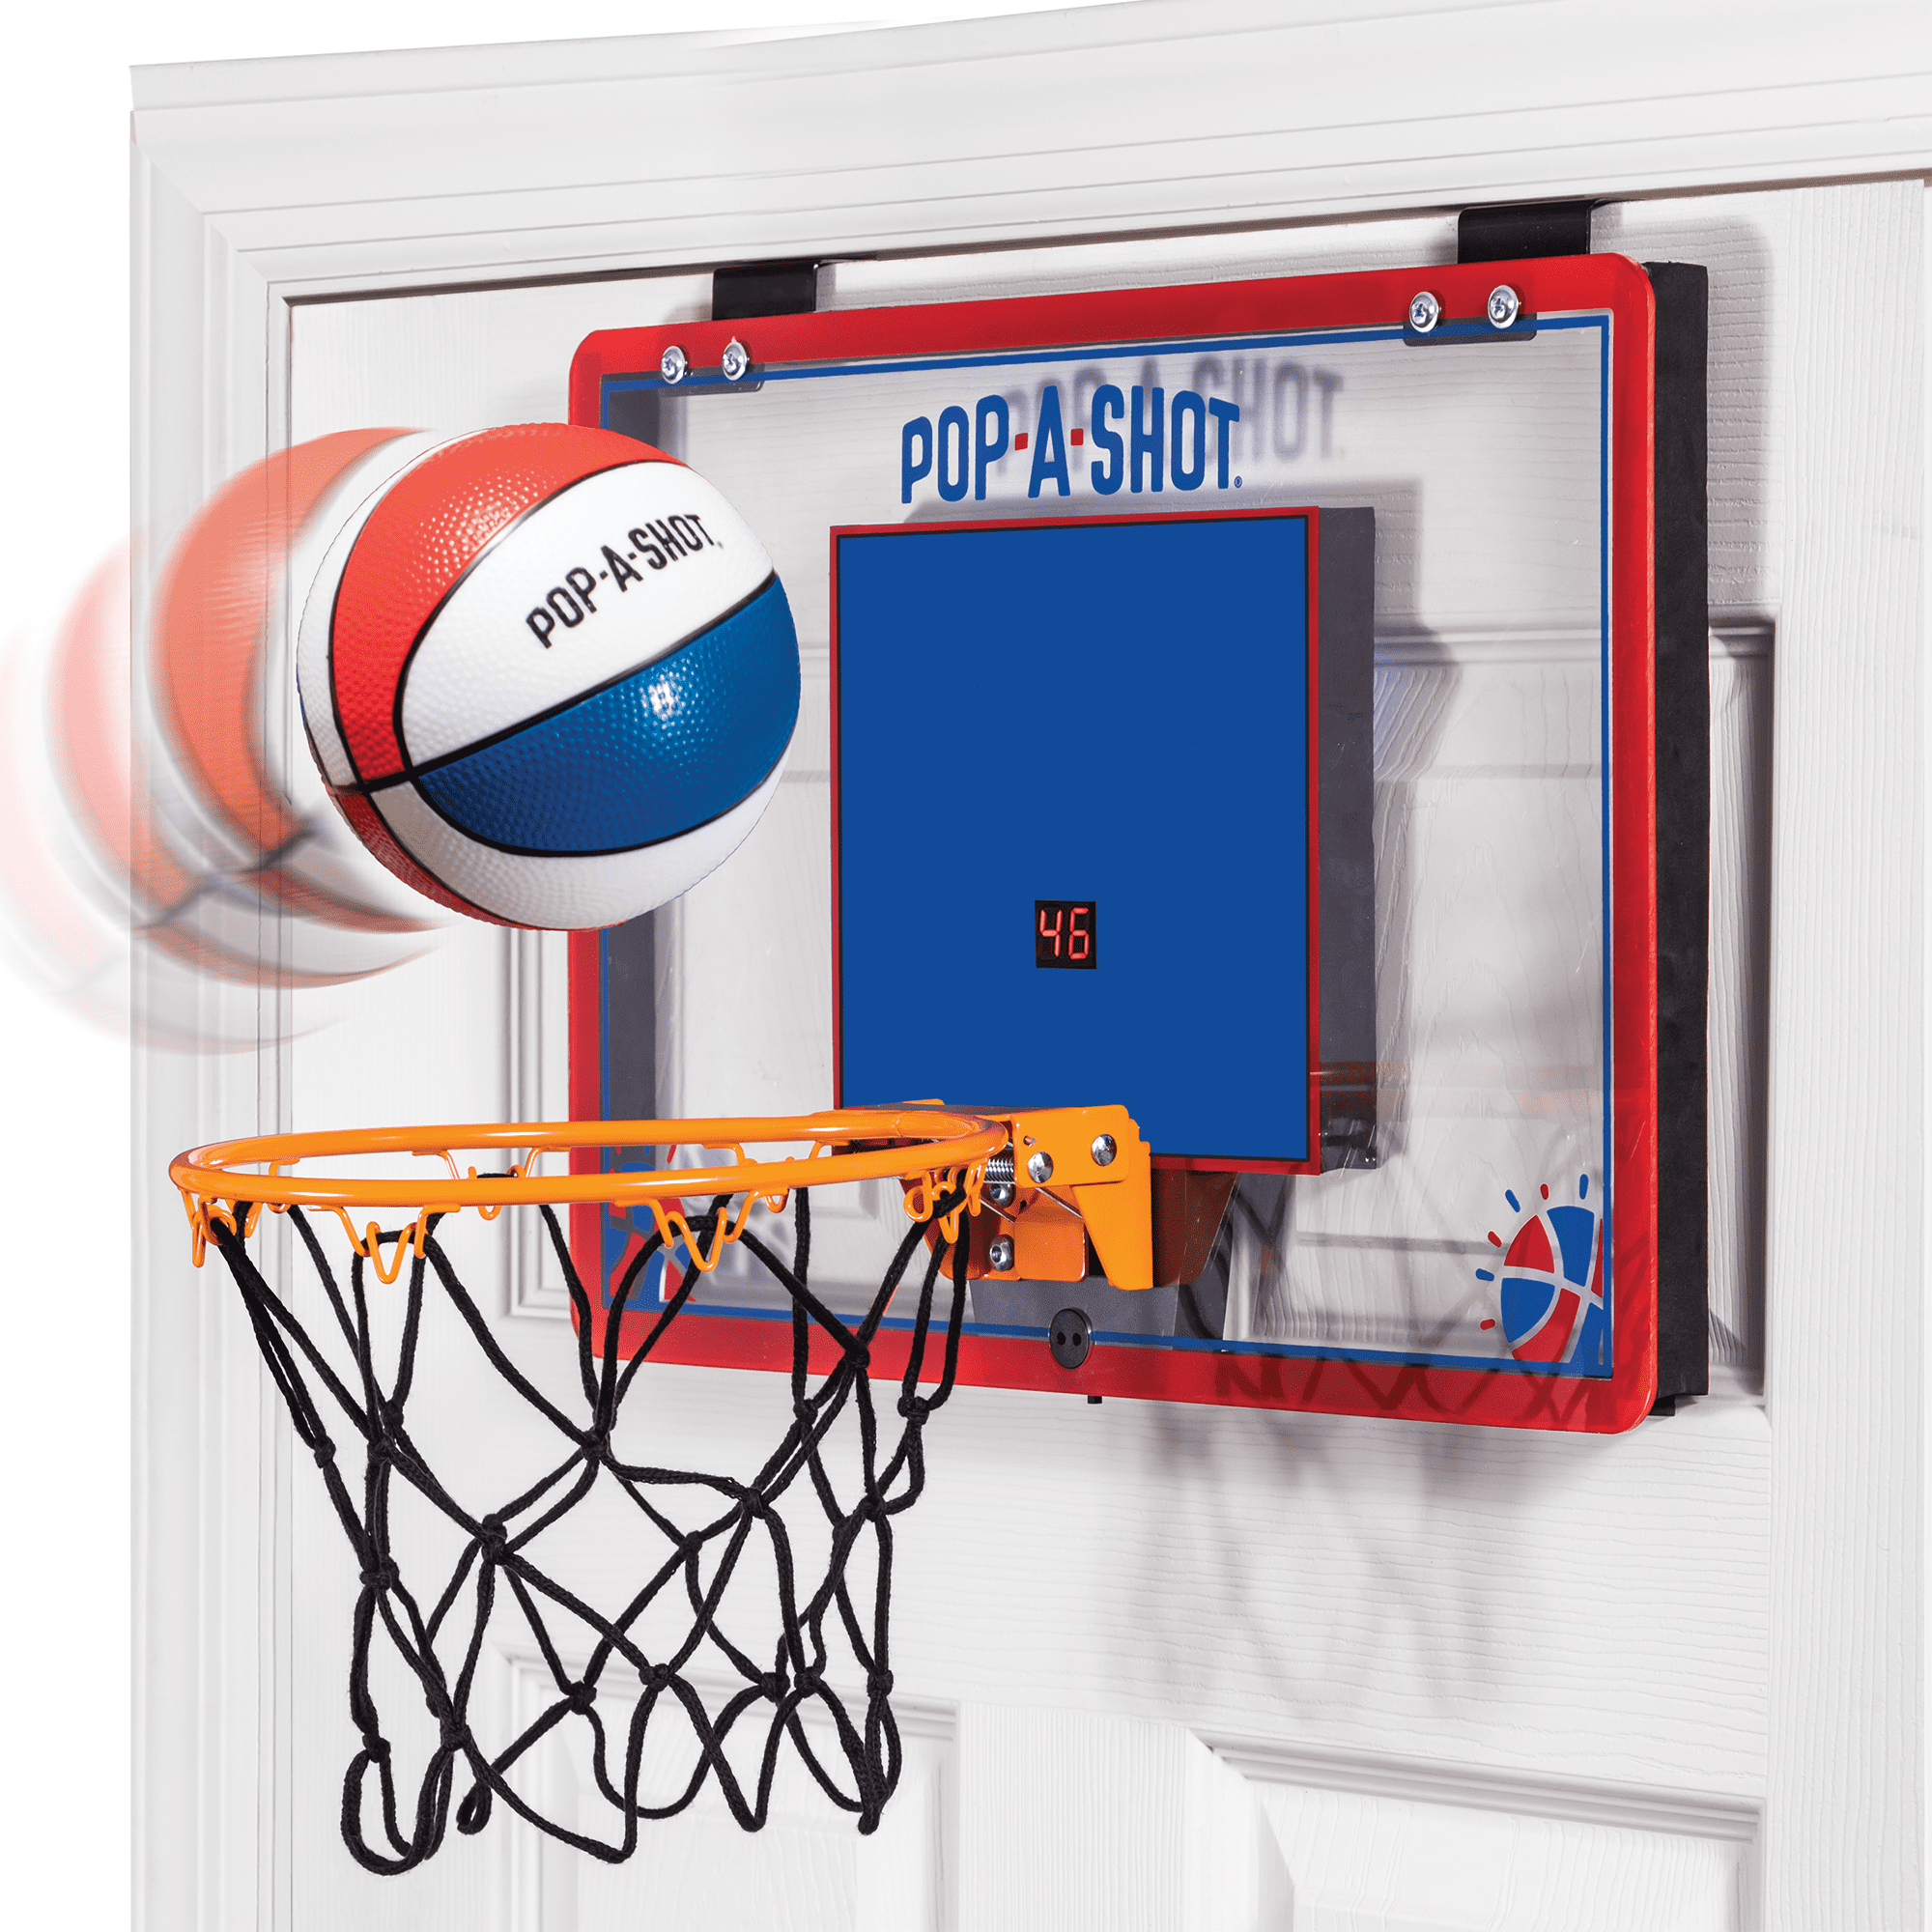 Pop-A-Shot Official Dual Shot Sport Arcade Basketball Game 